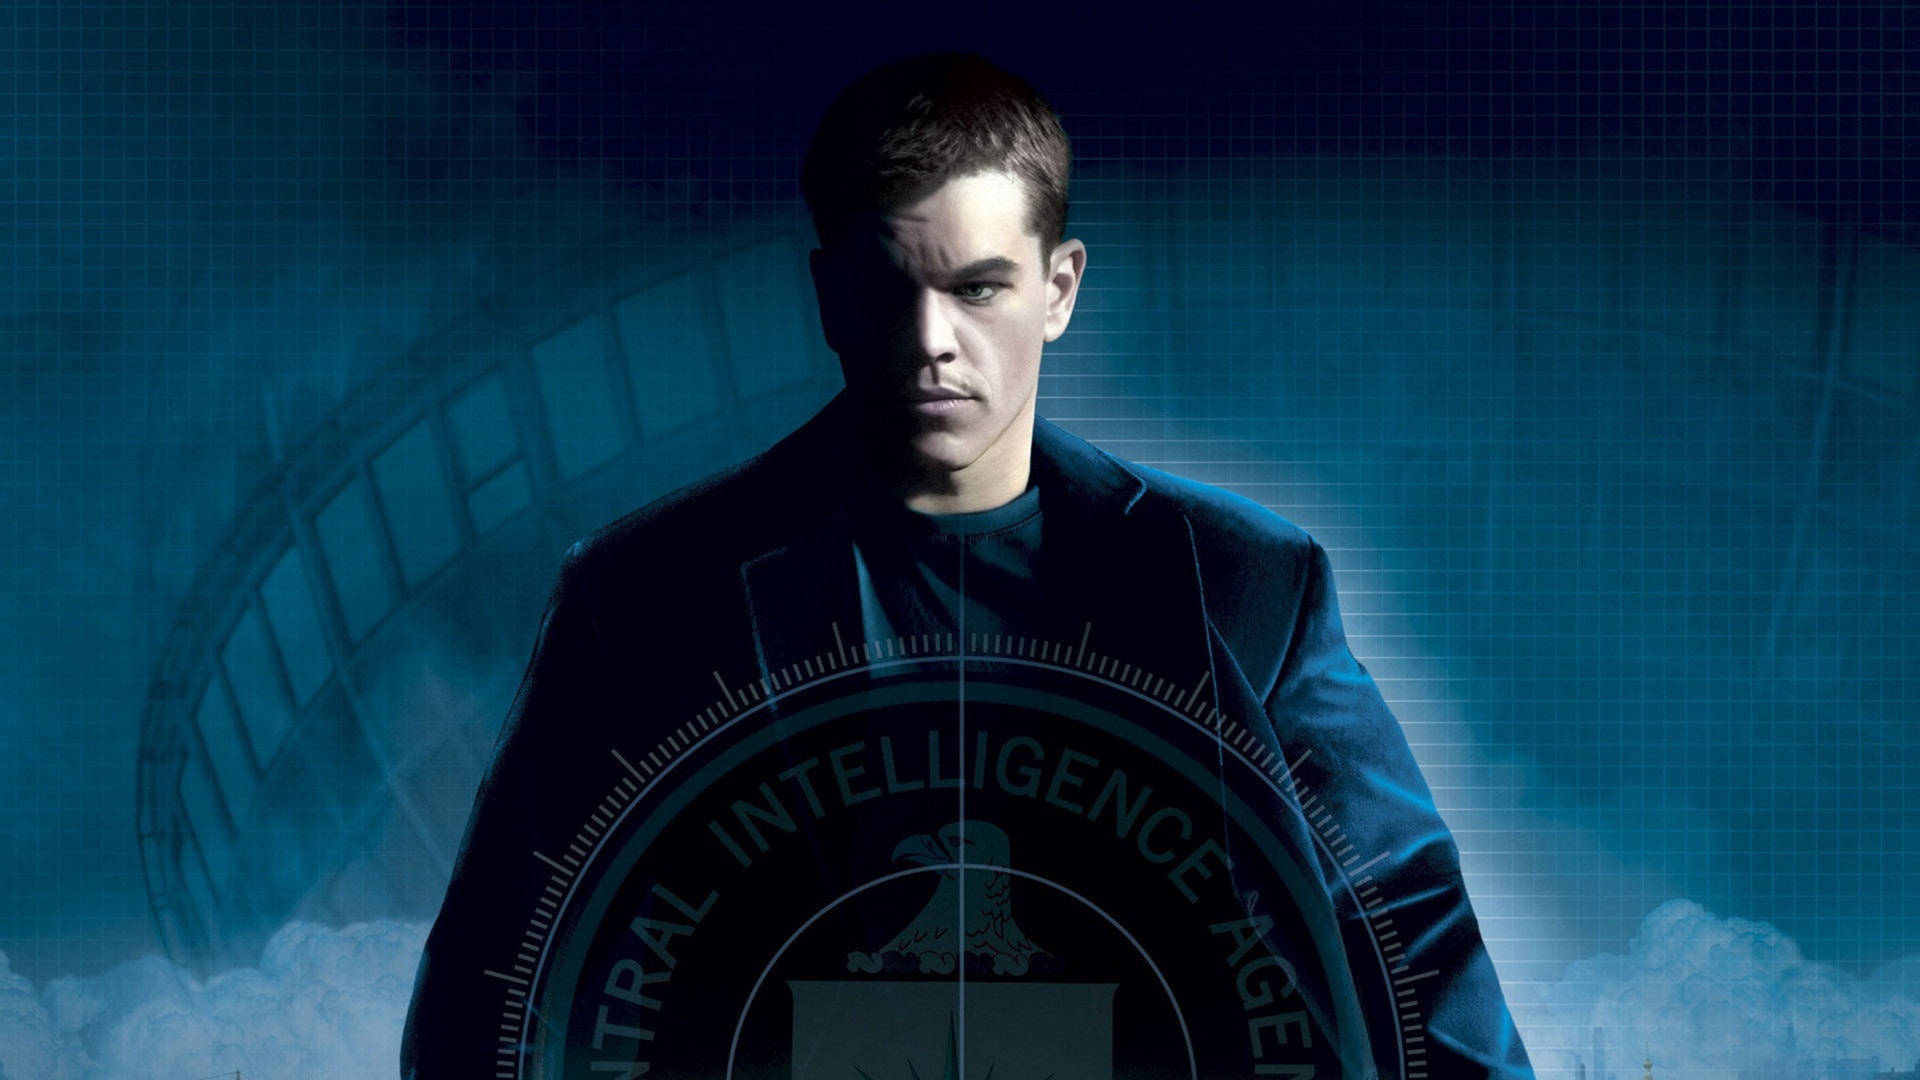 Bourne Actor Matt Damon Wallpaper